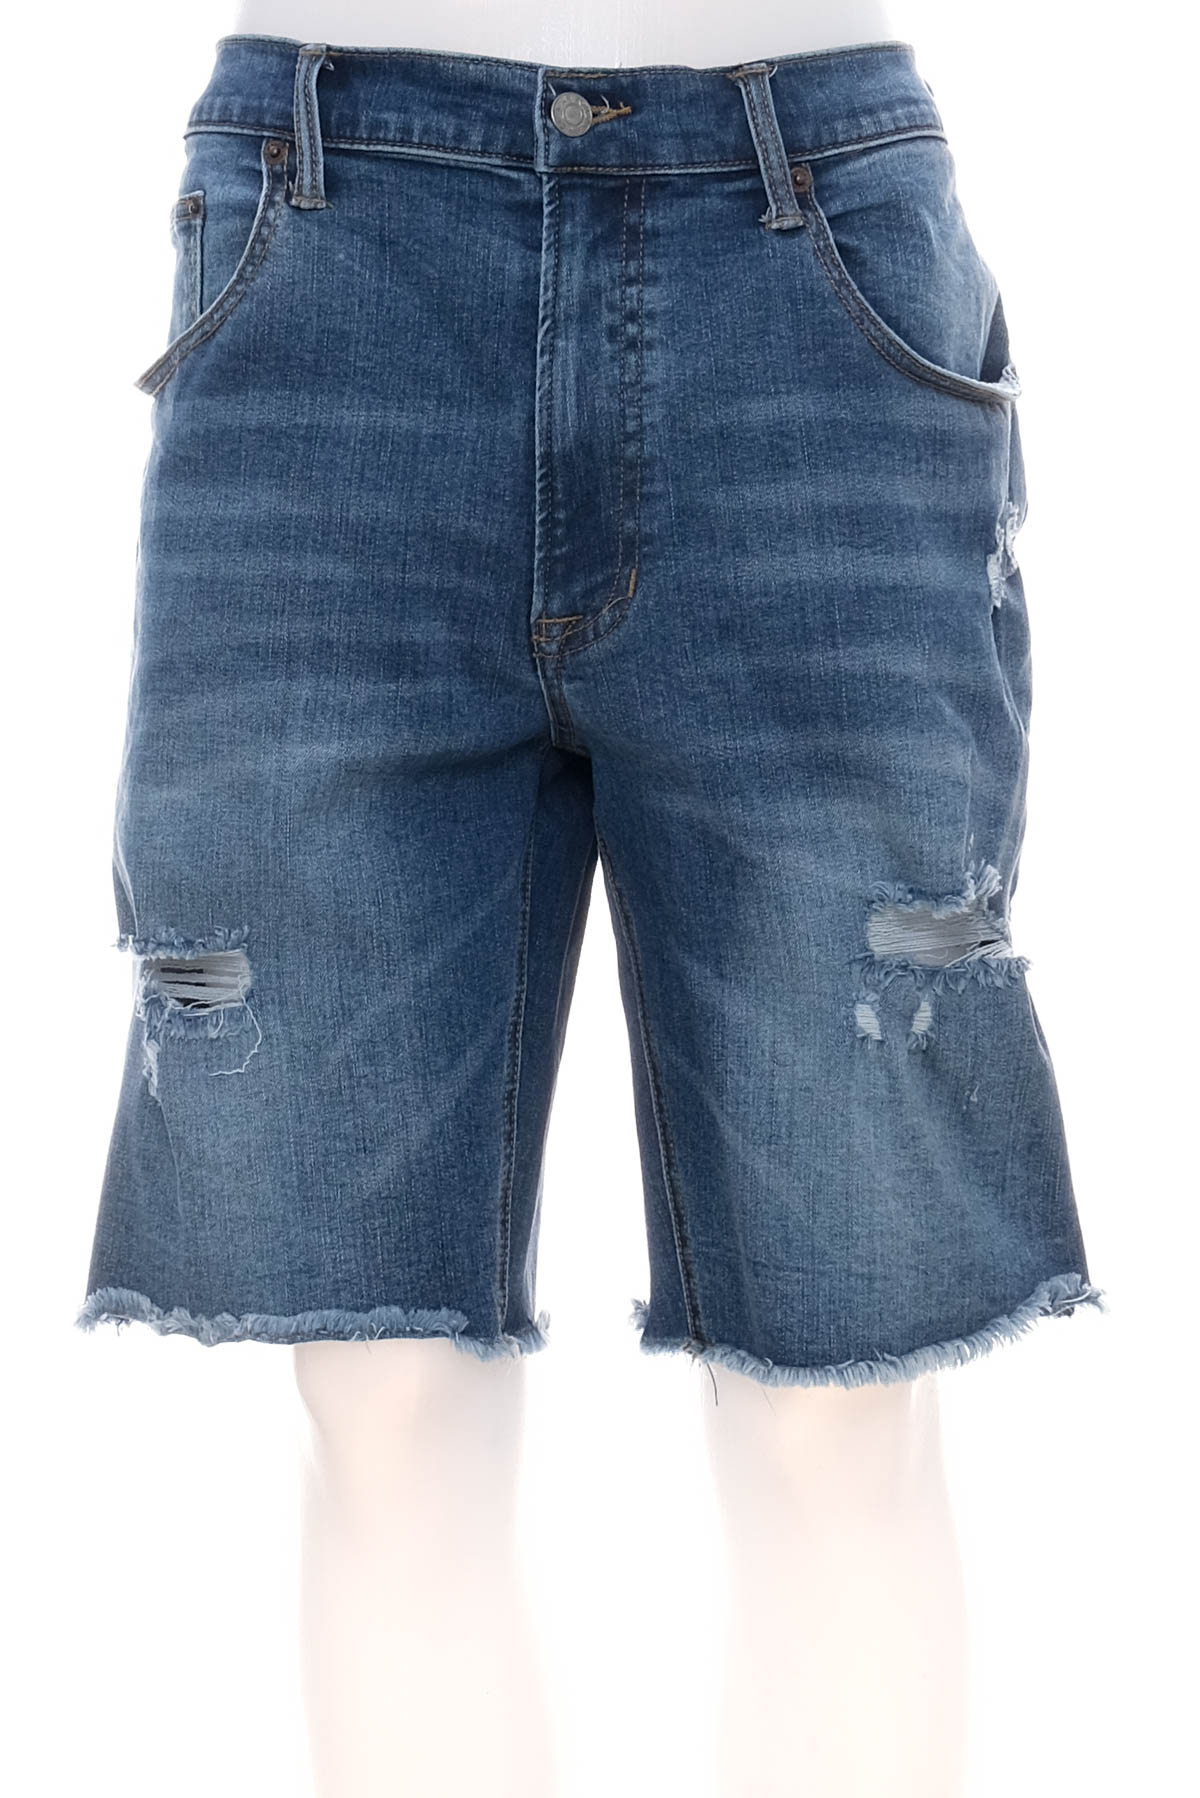 Pantaloni scurți bărbați - ARIZONA JEAN CO - 0